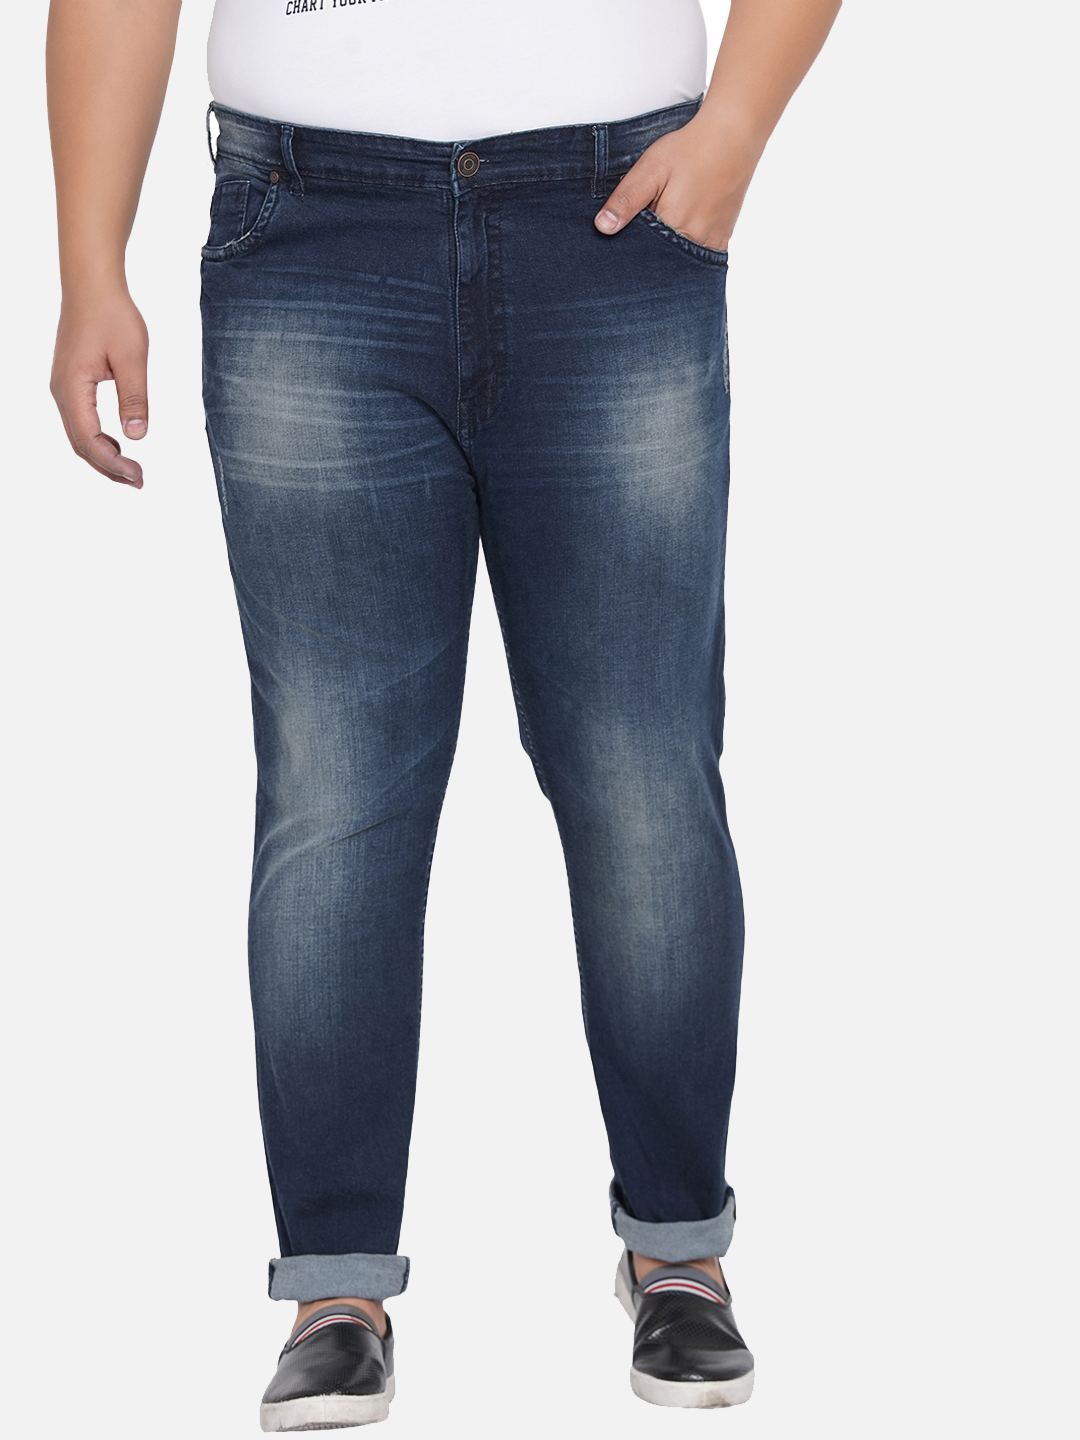 bottomwear/jeans/JPJ12205/jpj12205-2.jpg